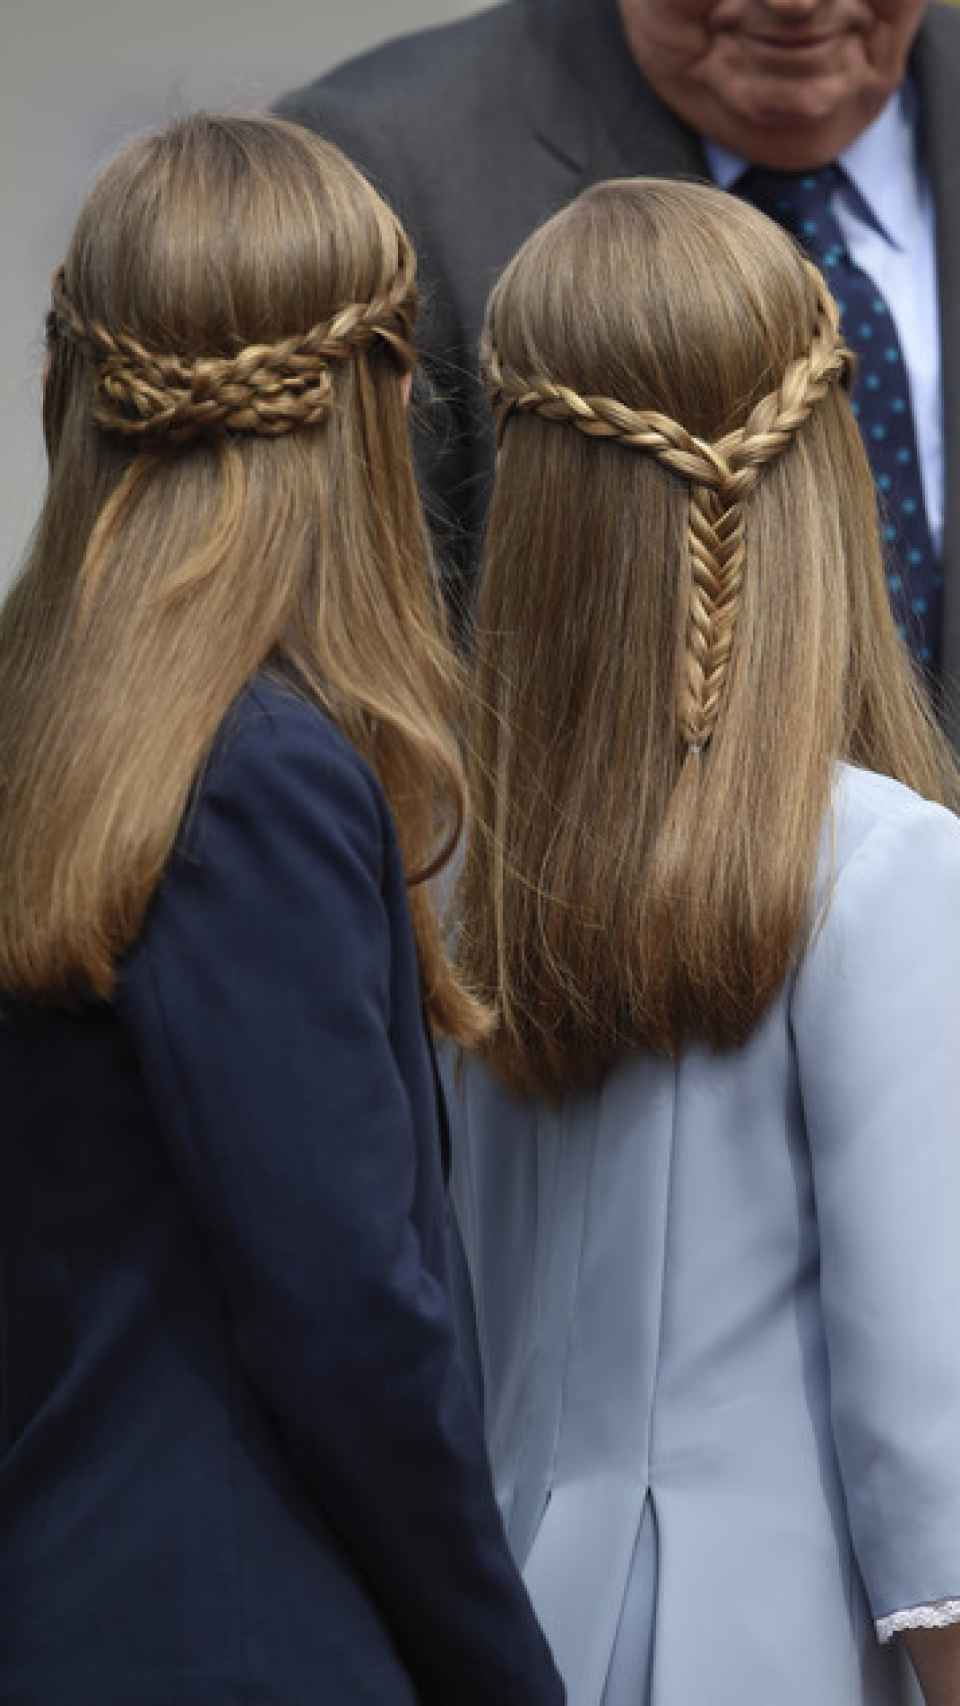 Las infantas Leonor y Sofía, muy estilosas con su peinado de trenzas.